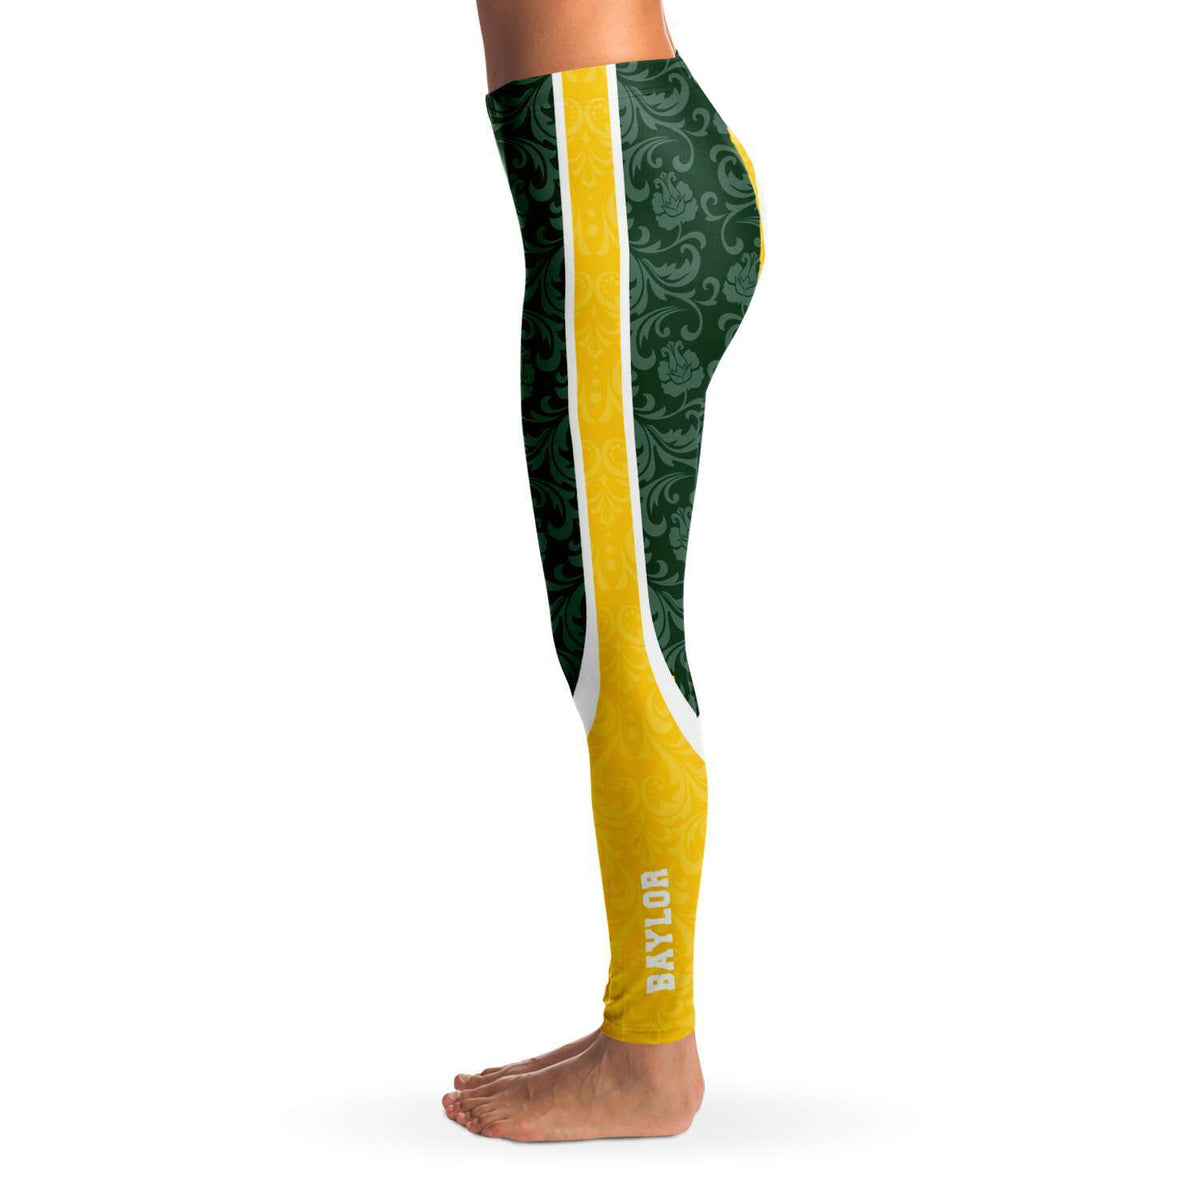 Designs by MyUtopia Shout Out:Baylor Sic 'Em Basketball Fan Fashion Leggings Yoga Workout Pants,XS / Green,Leggings - AOP